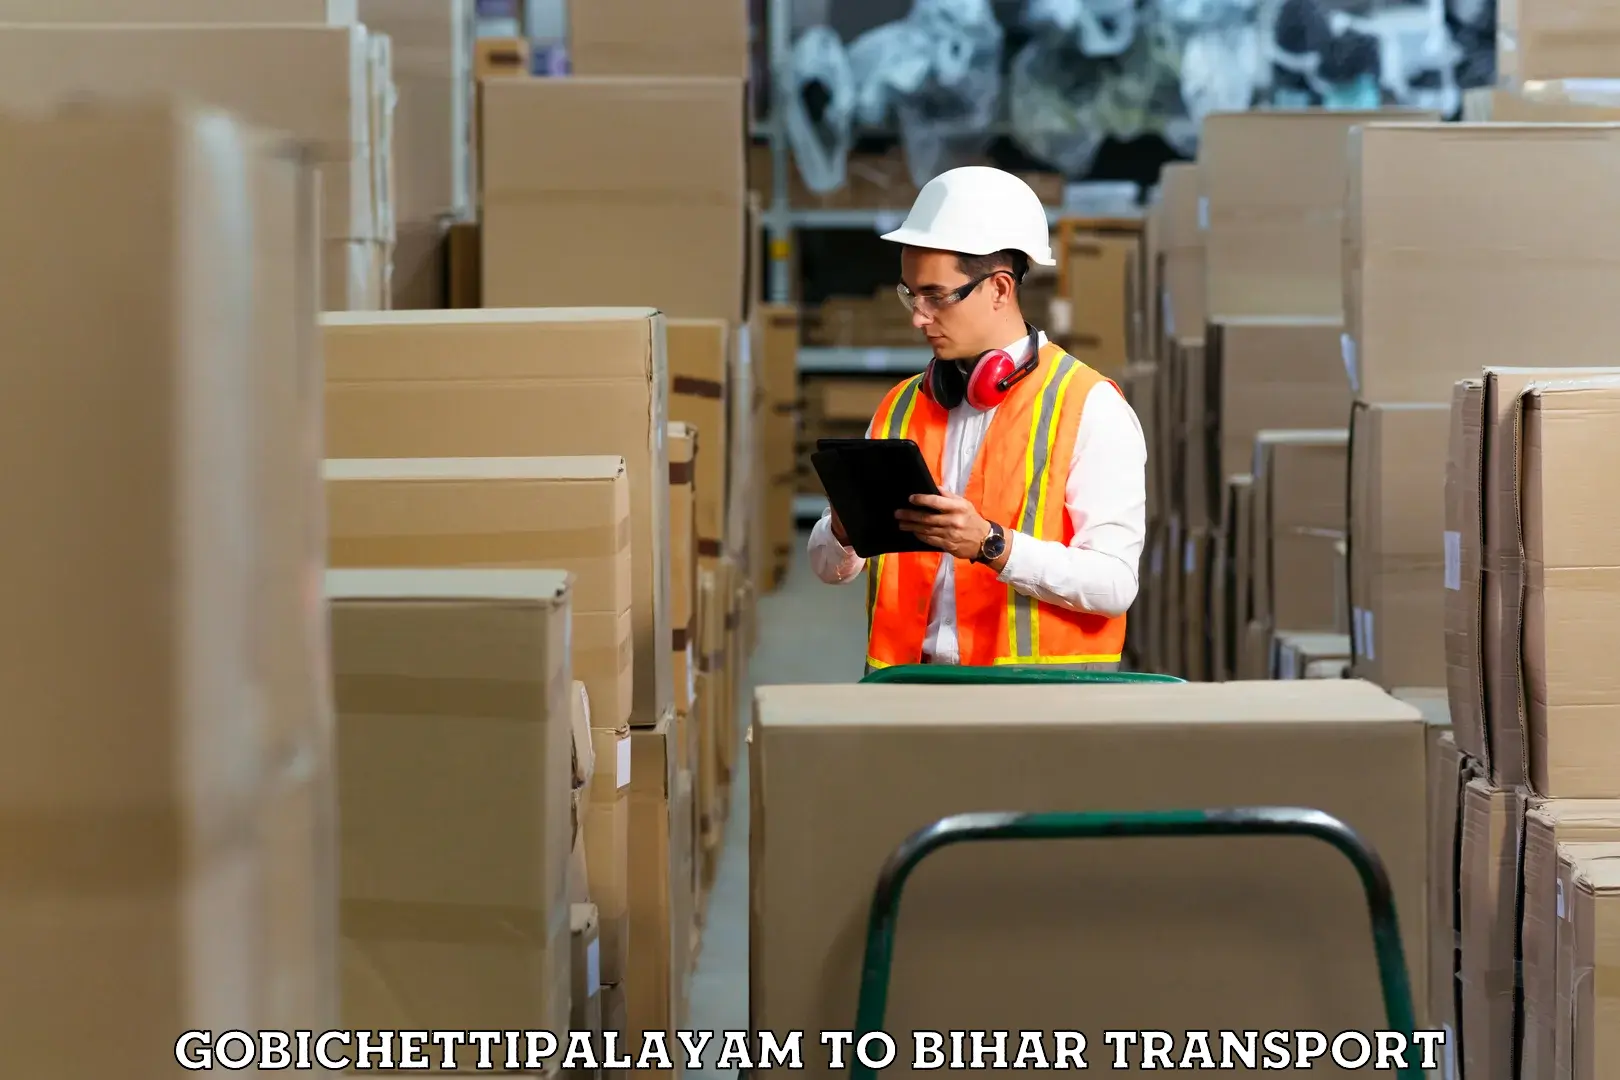 Lorry transport service Gobichettipalayam to Bihta